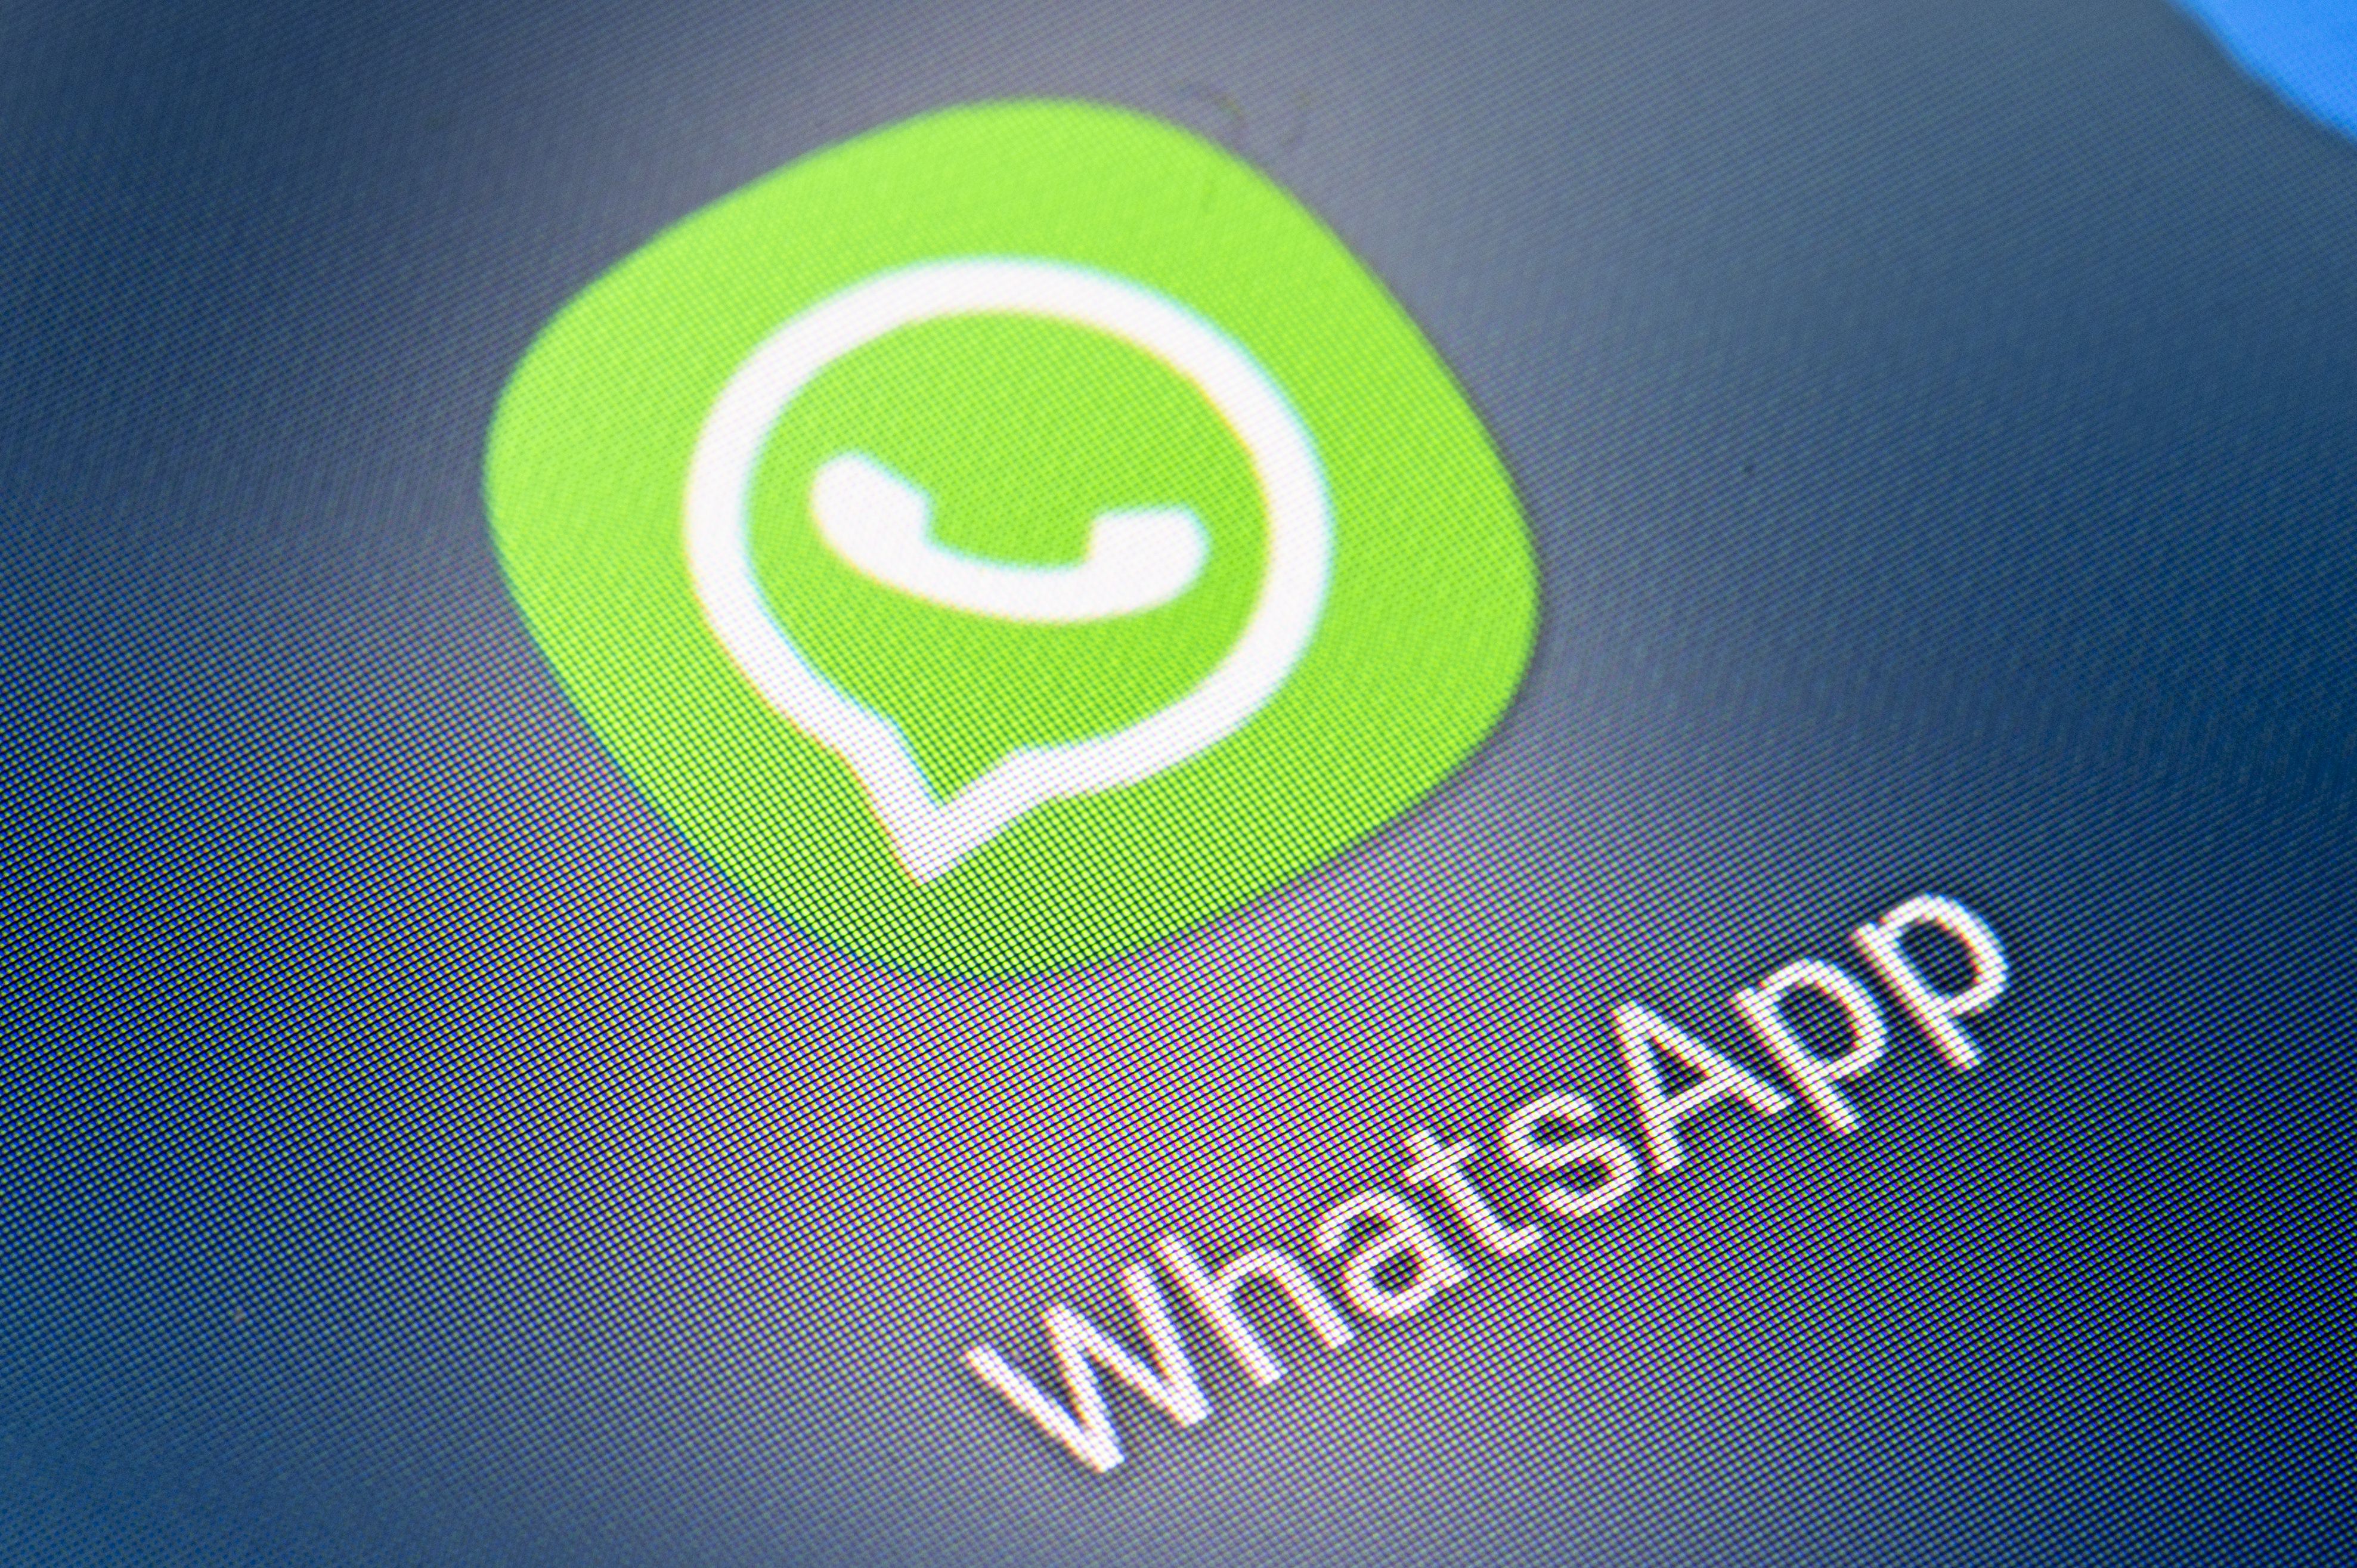 Debido a que WhatsApp almacena en muchos casos información sensible, es primordial saber cómo bloquear la cuenta en caso de robos. (Foto: Europa Press)